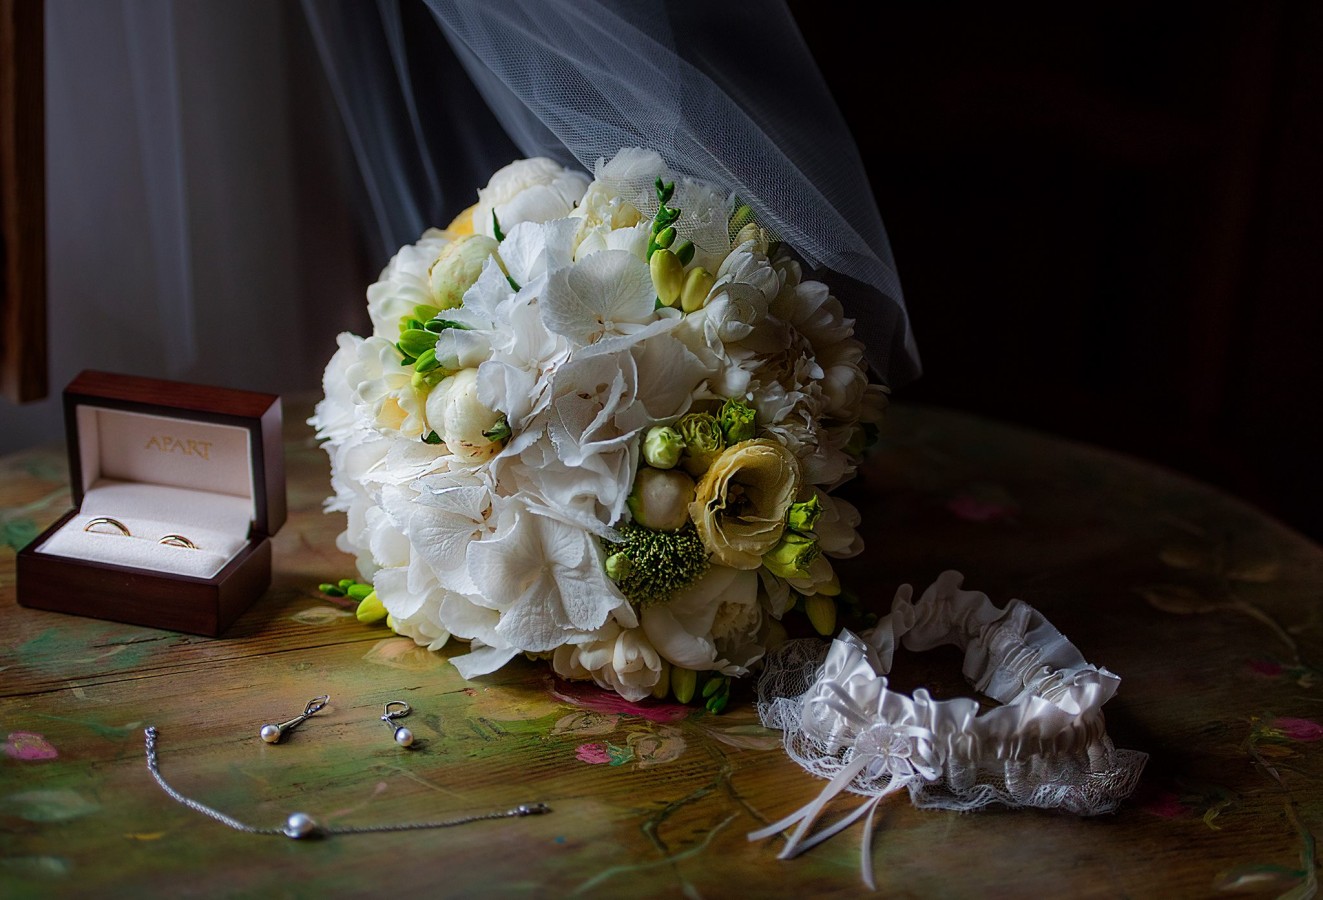 zdjęcia kielce fotograf foto-molly portfolio zdjecia slubne inspiracje wesele plener slubny sesja slubna